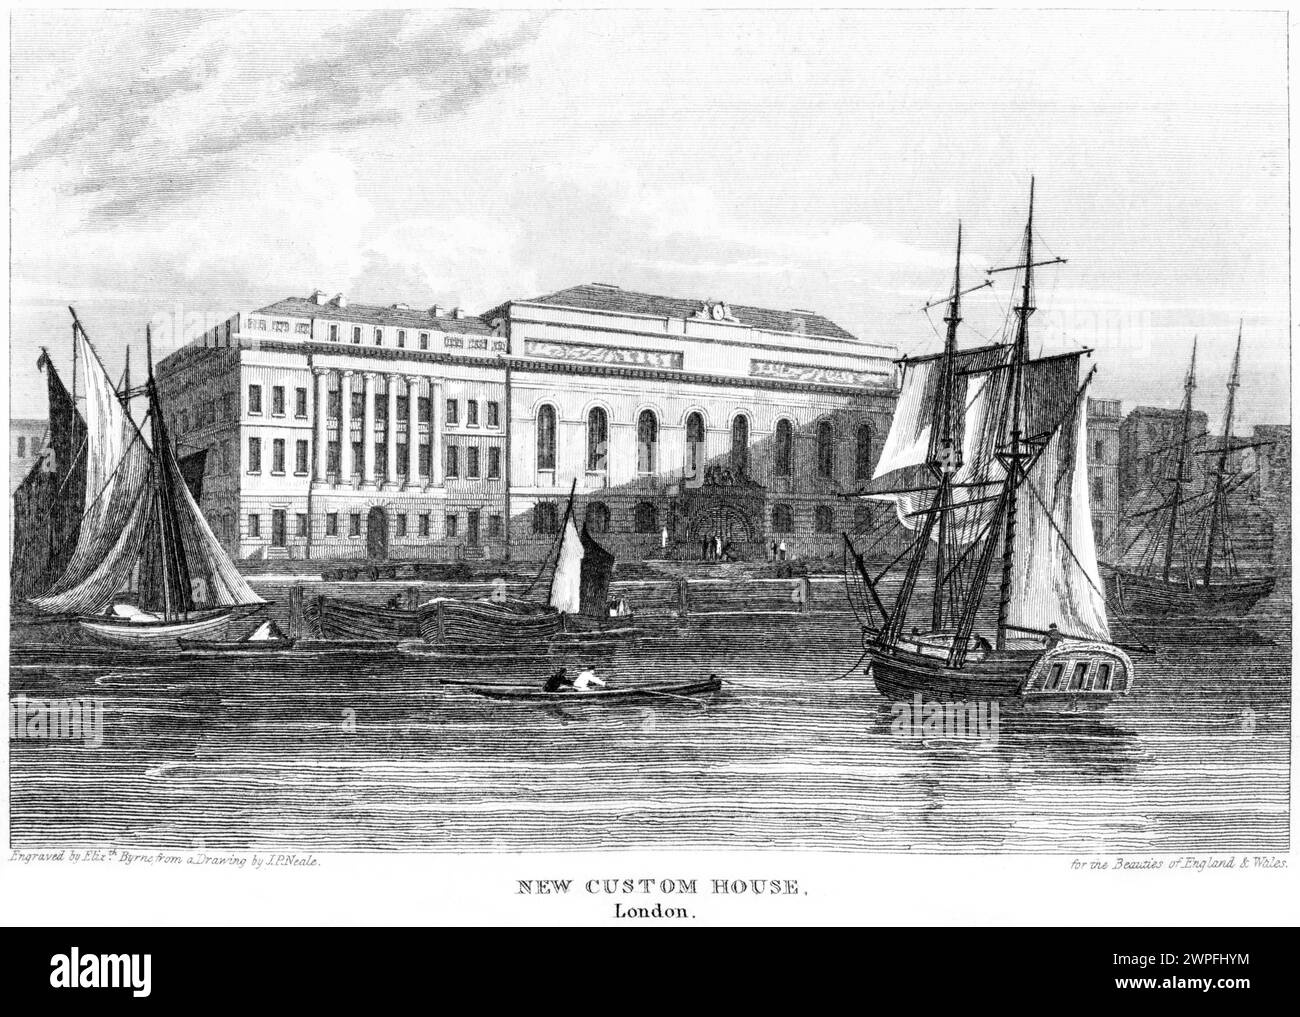 Une gravure intitulée New Custom House, Londres (Southwark Bridge) UK numérisée à haute résolution à partir d'un livre publié vers 1815. Banque D'Images